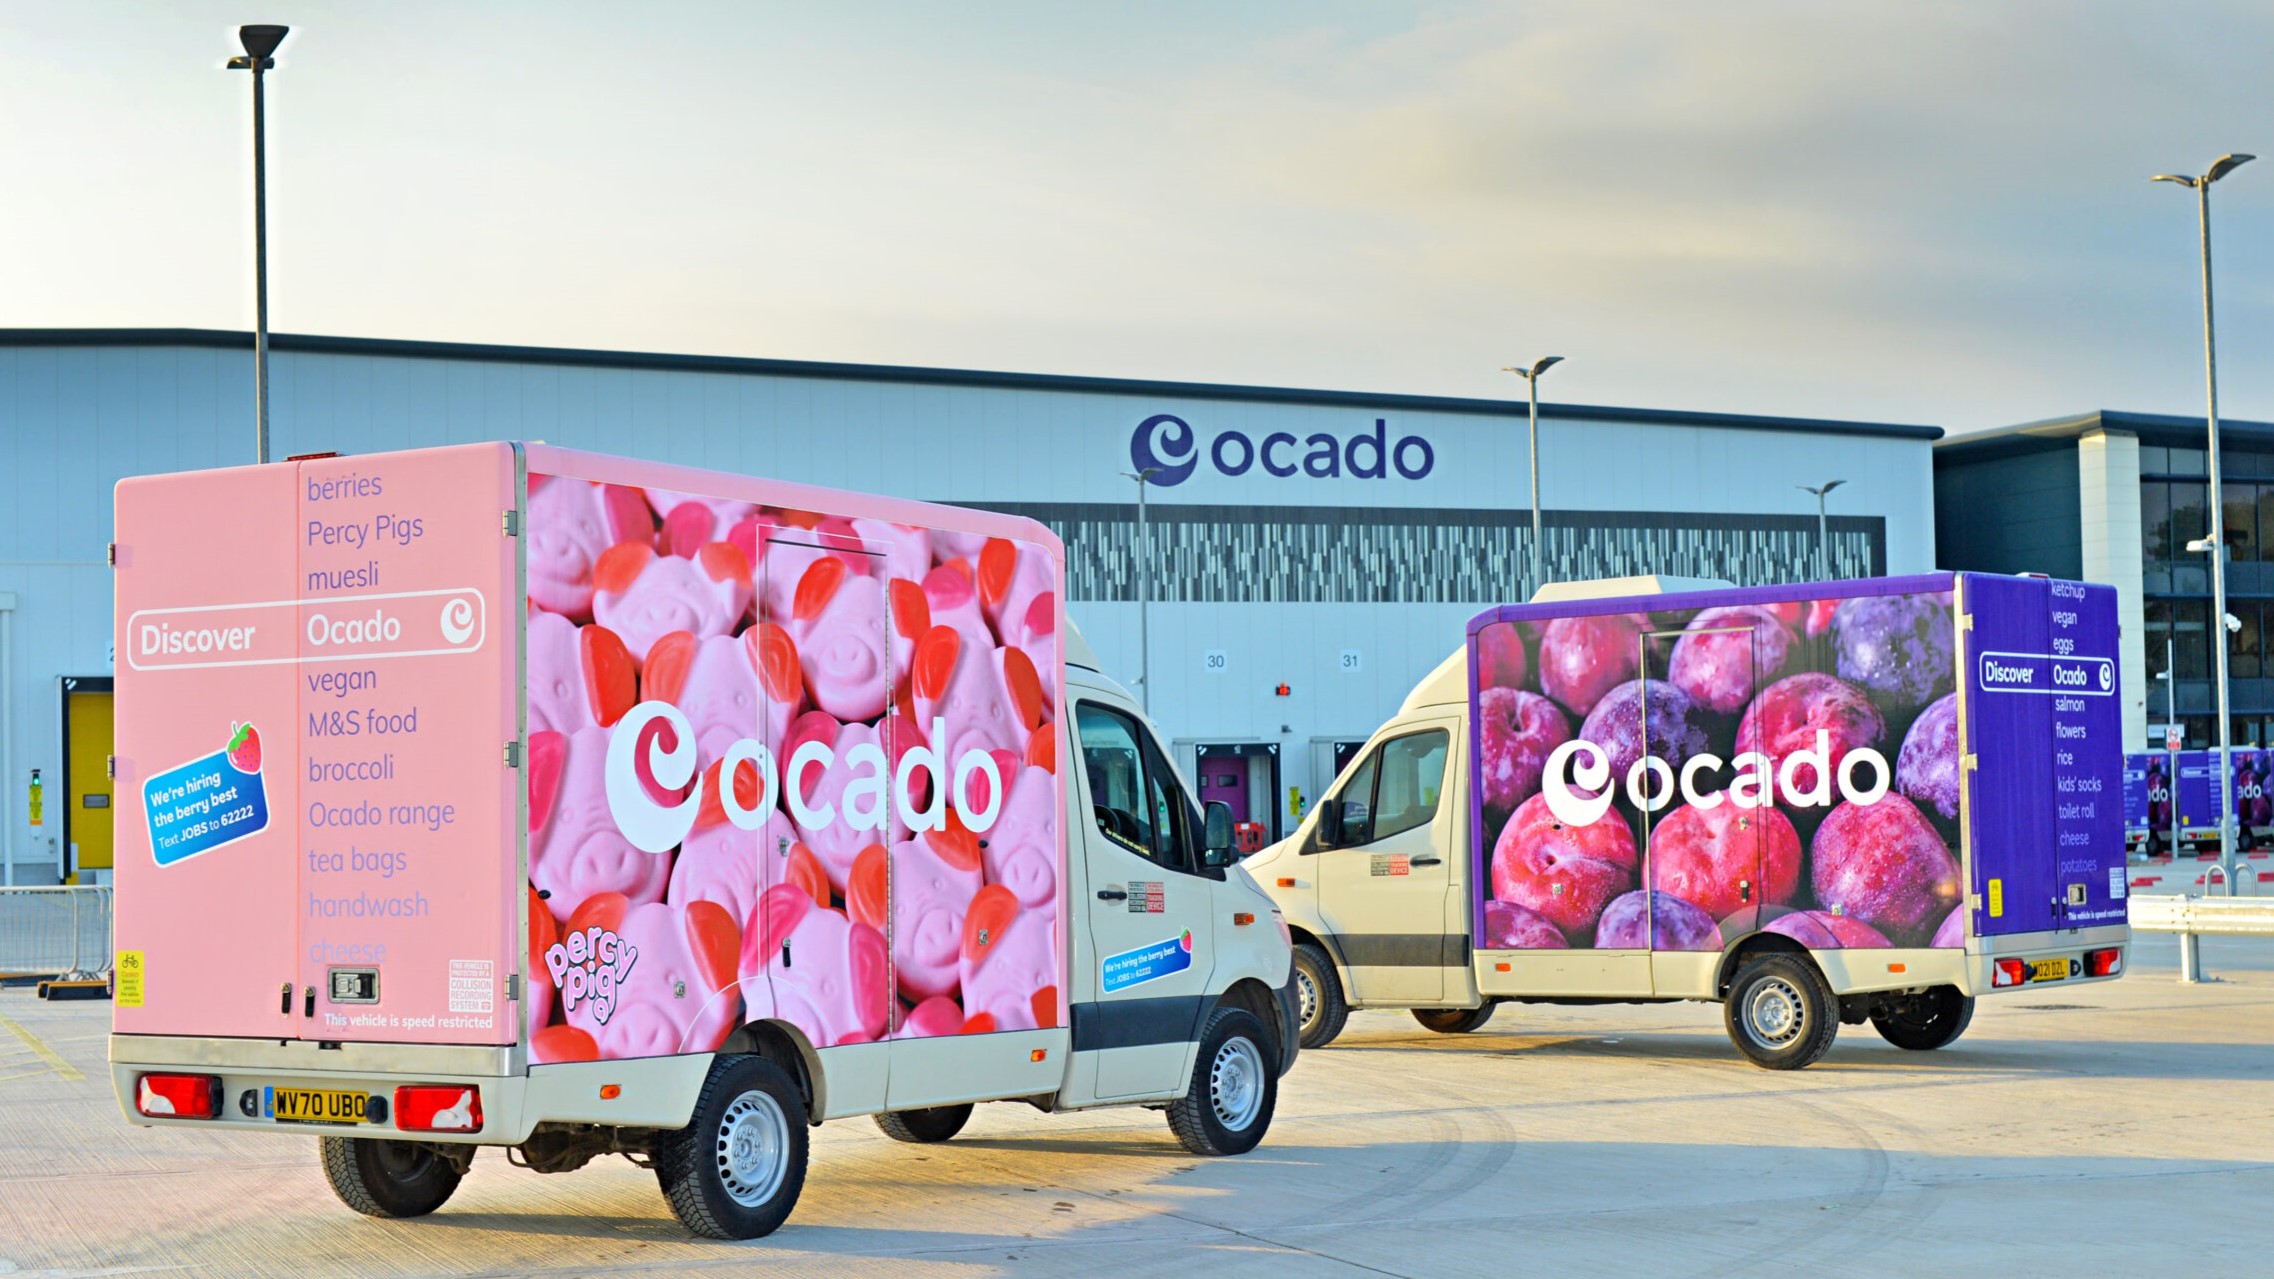 Ocado mentionne des ambitions internationales dans les chiffres de ses bénéfices